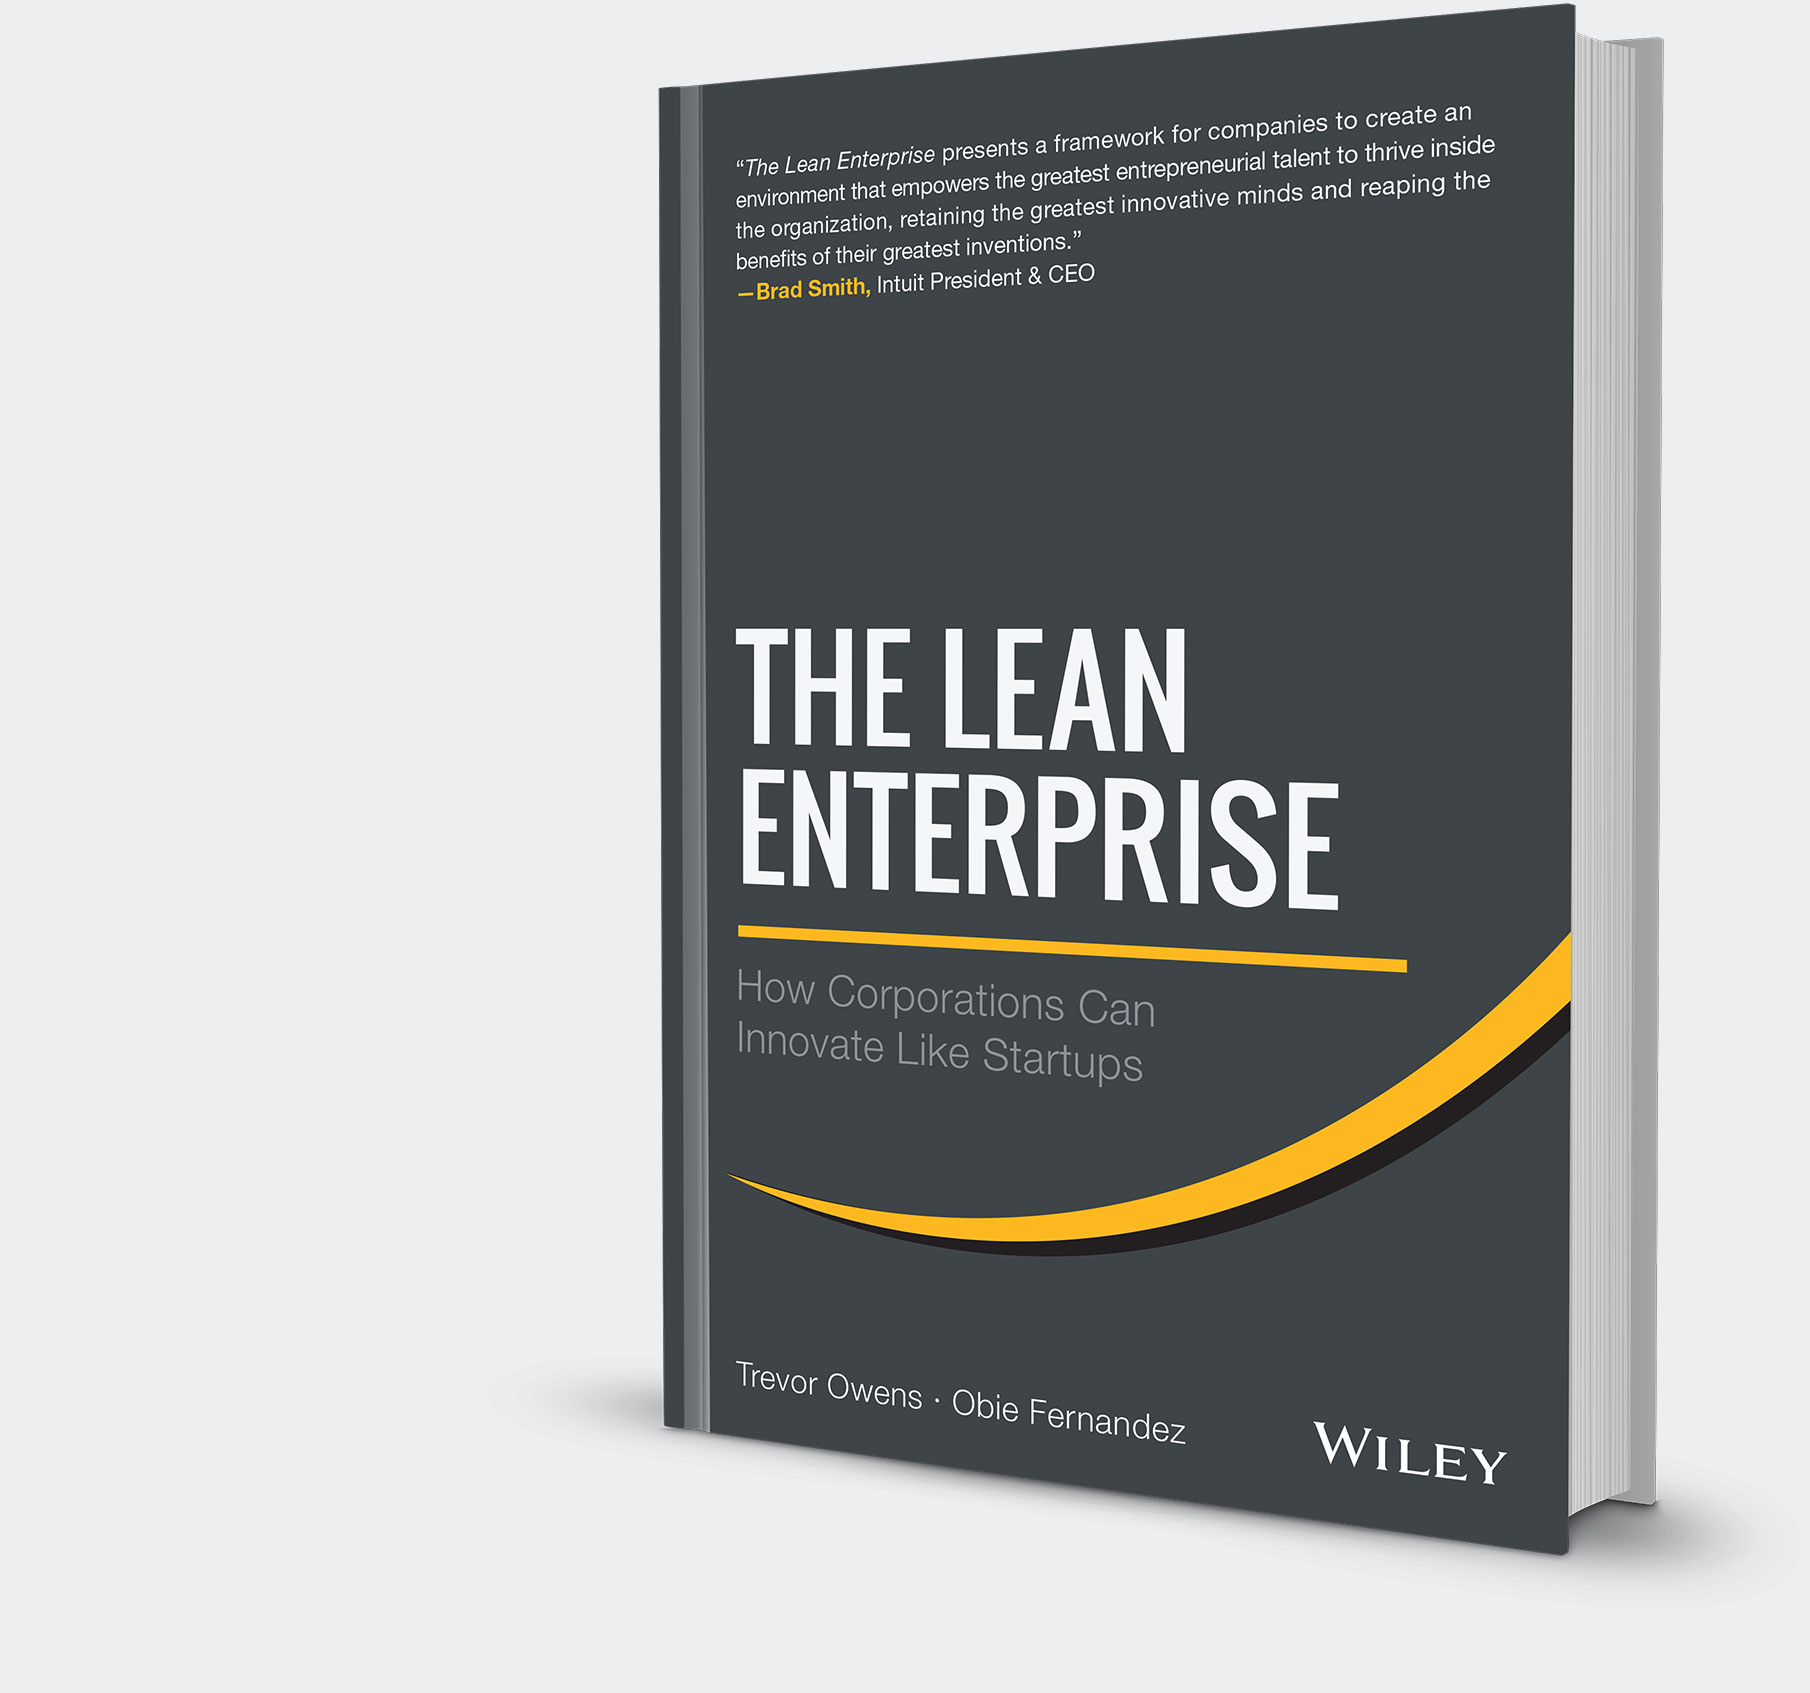 The Lean Enterprise - FULL Webinar